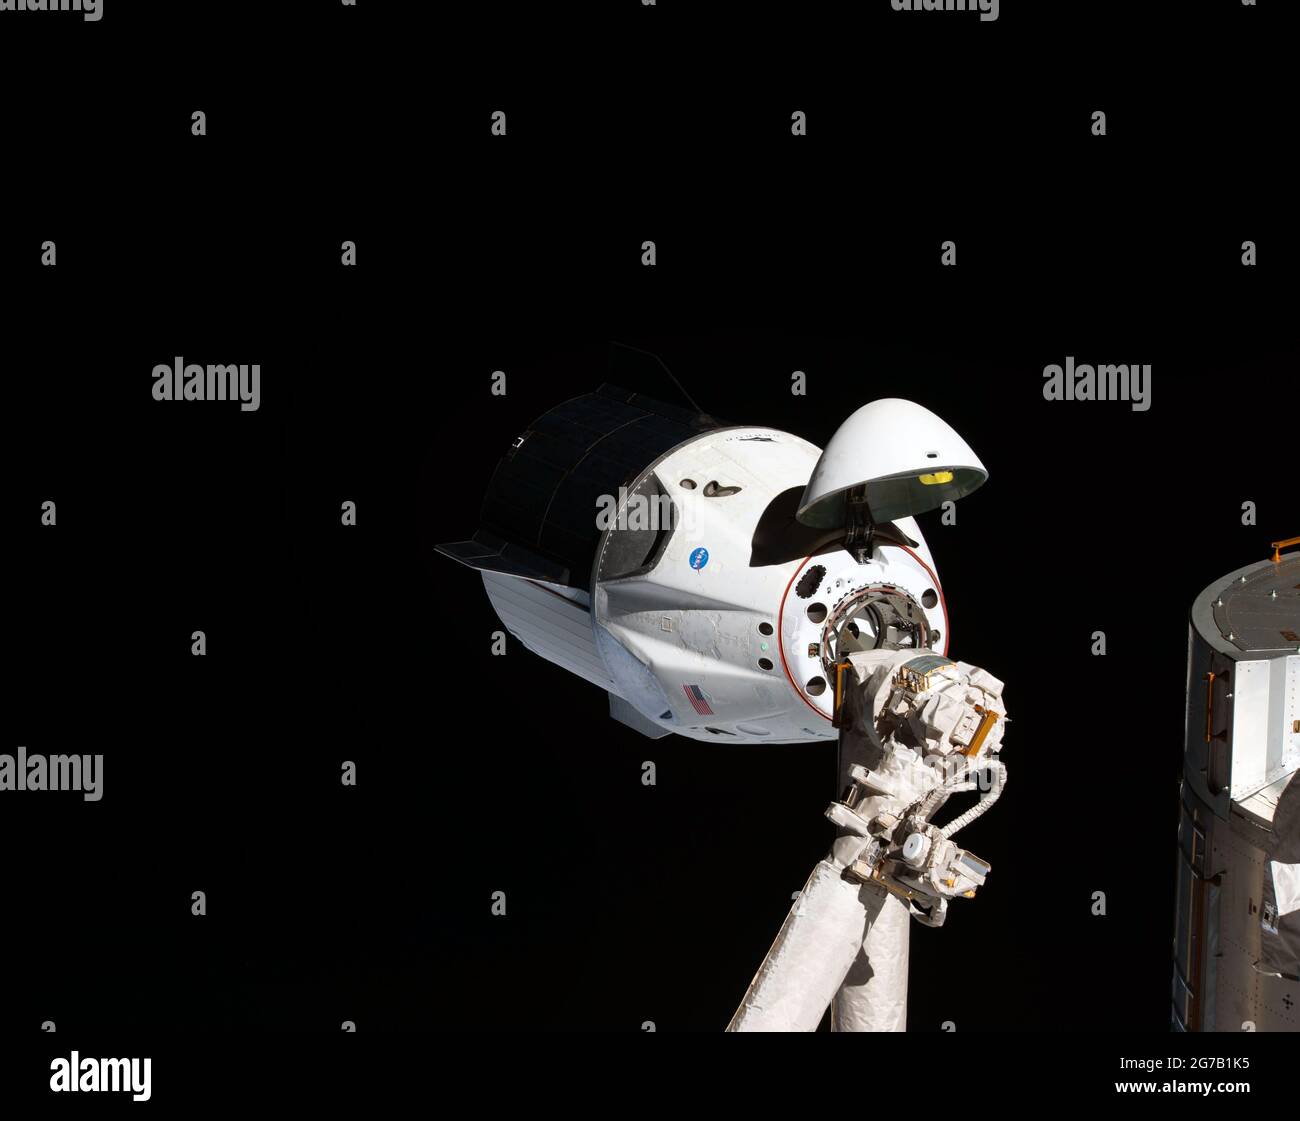 El primer dragón de SpaceX se acerca a la ISS. La nave espacial sin tripulación SpaceX Crew Dragon es el primer vehículo de la tripulación comercial que visita la Estación Espacial Internacional. Aquí se muestra con su nariz del buje abierta, revelando su mecanismo de acoplamiento al acercarse al módulo Harmony de la estación. El Crew Dragon acoplará automáticamente momentos más tarde al adaptador de acoplamiento internacional conectado al extremo delantero de Harmony. Marzo 2019. Una versión única optimizada y mejorada de una imagen de la NASA / crédito obligatorio: La NASA Foto de stock